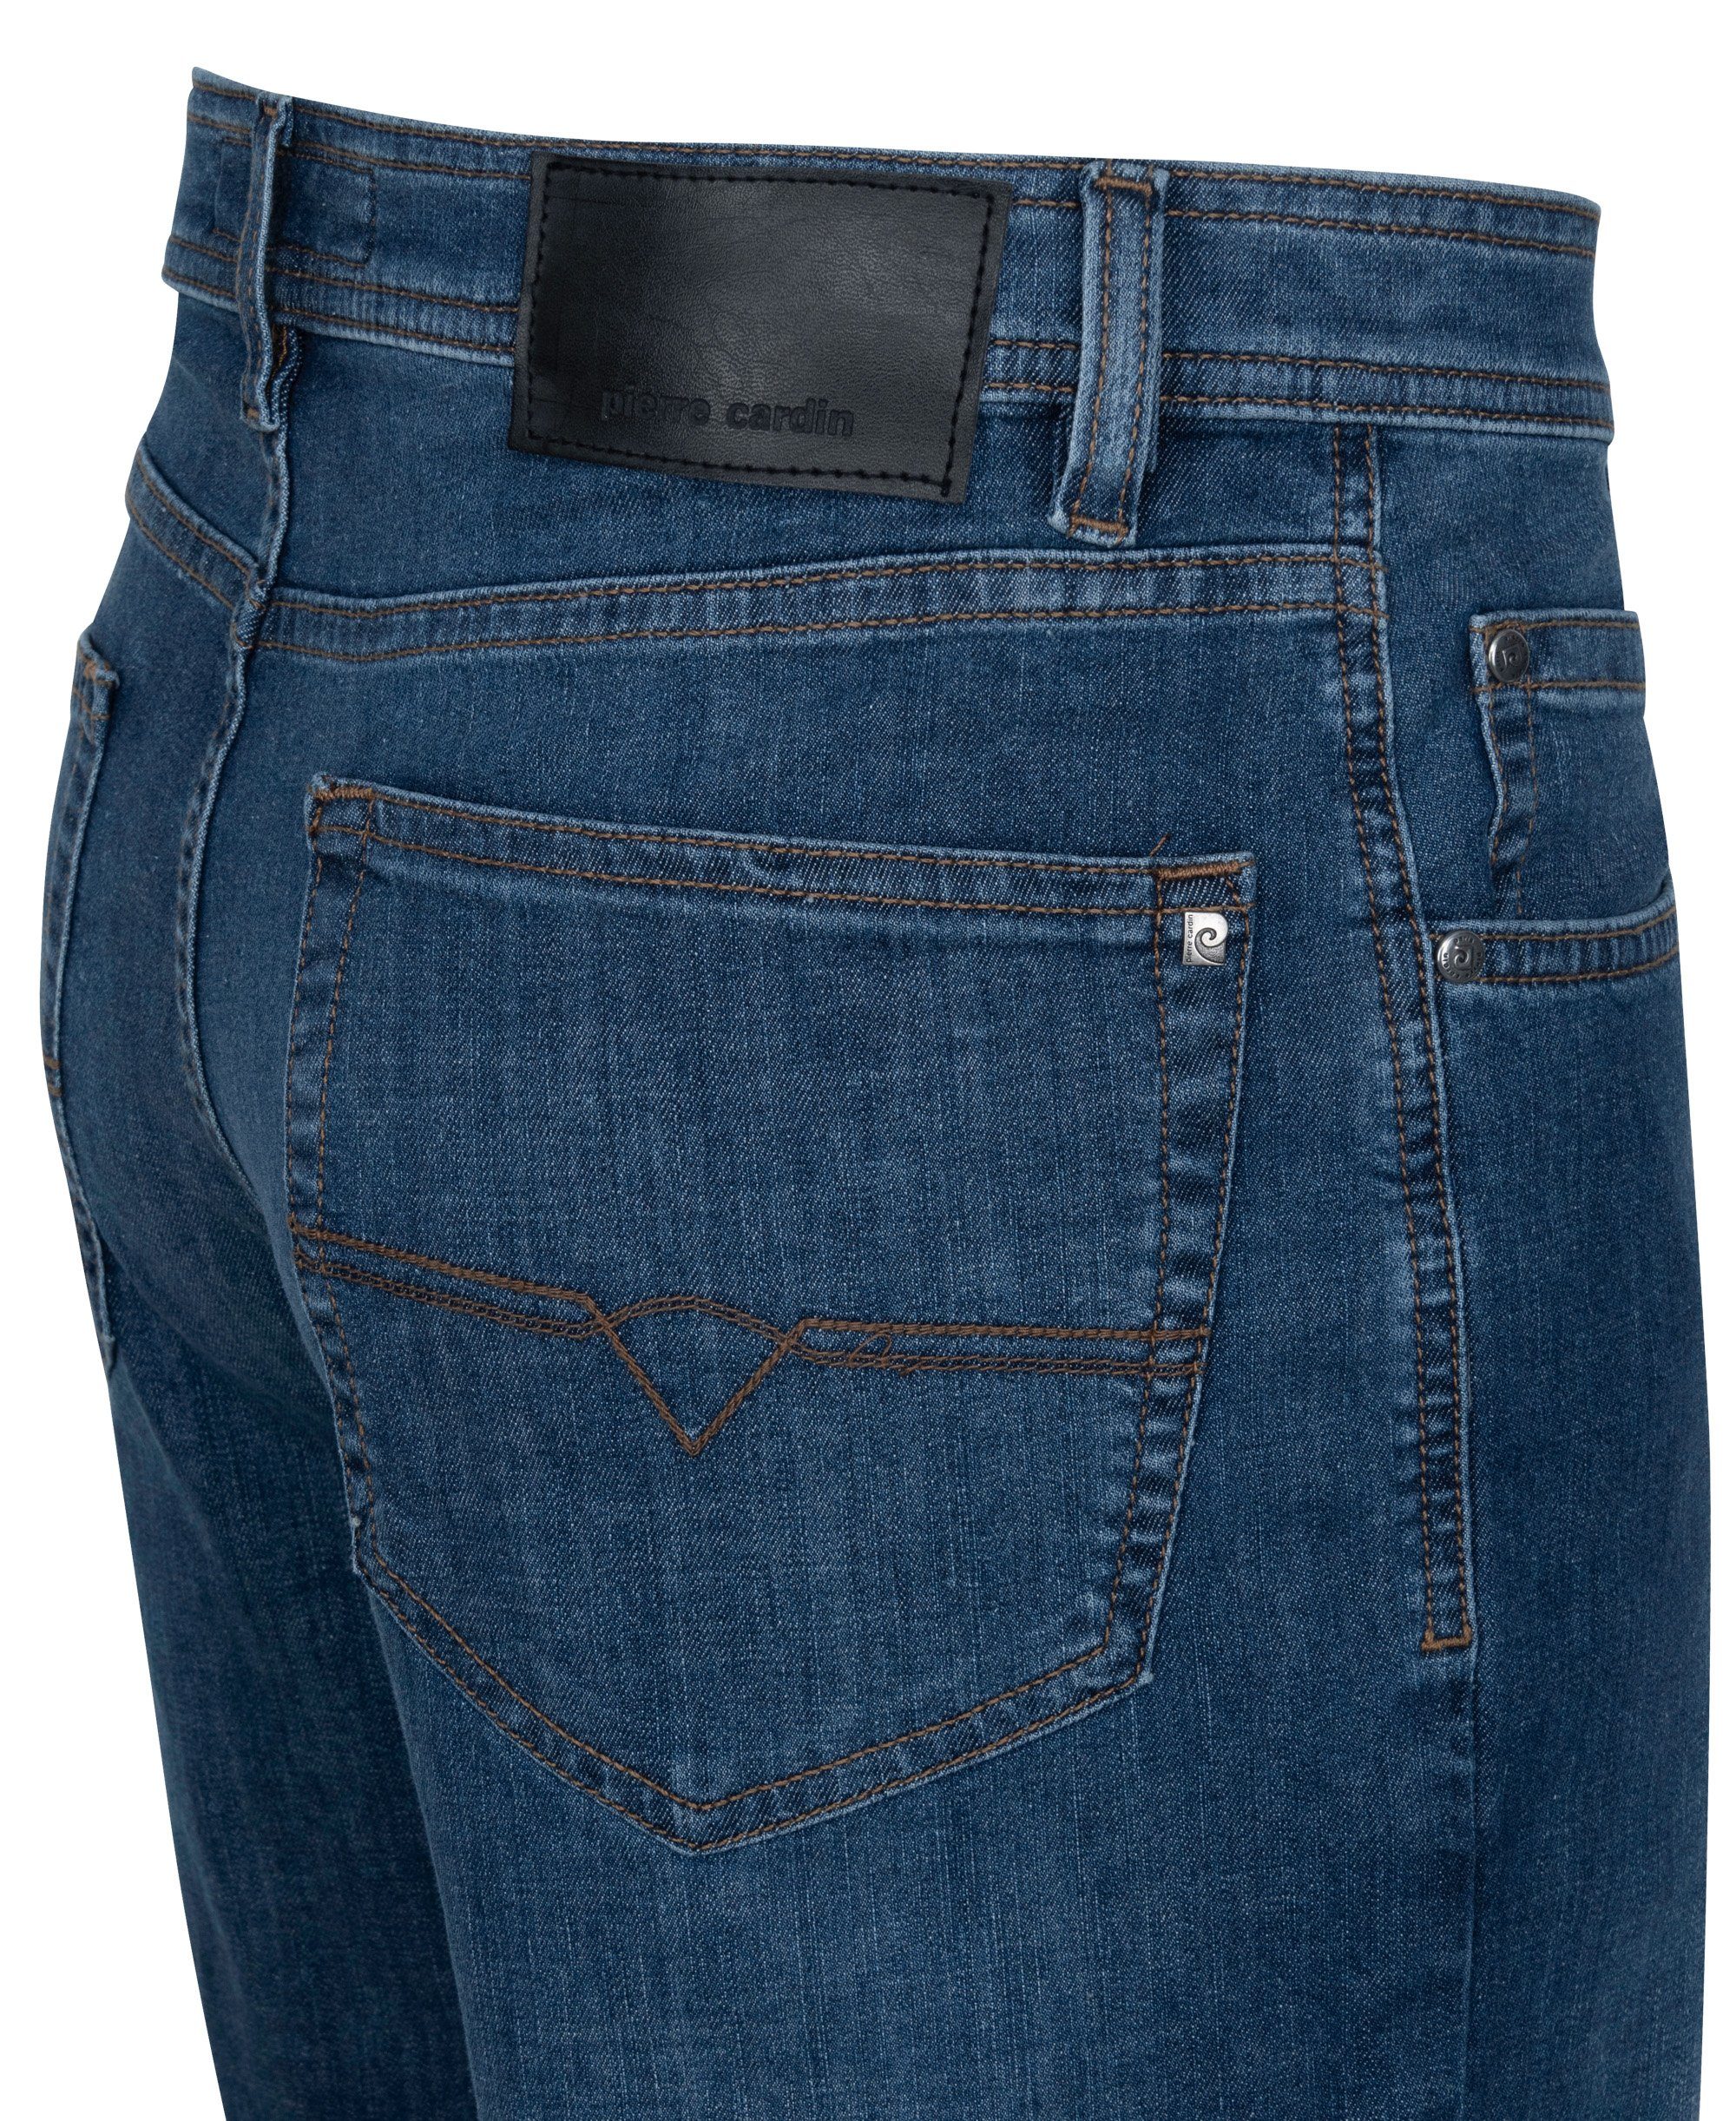 Pierre Cardin 5-Pocket-Jeans CARDIN Air blue - Touch used DIJON 7731.6822 PIERRE 32310